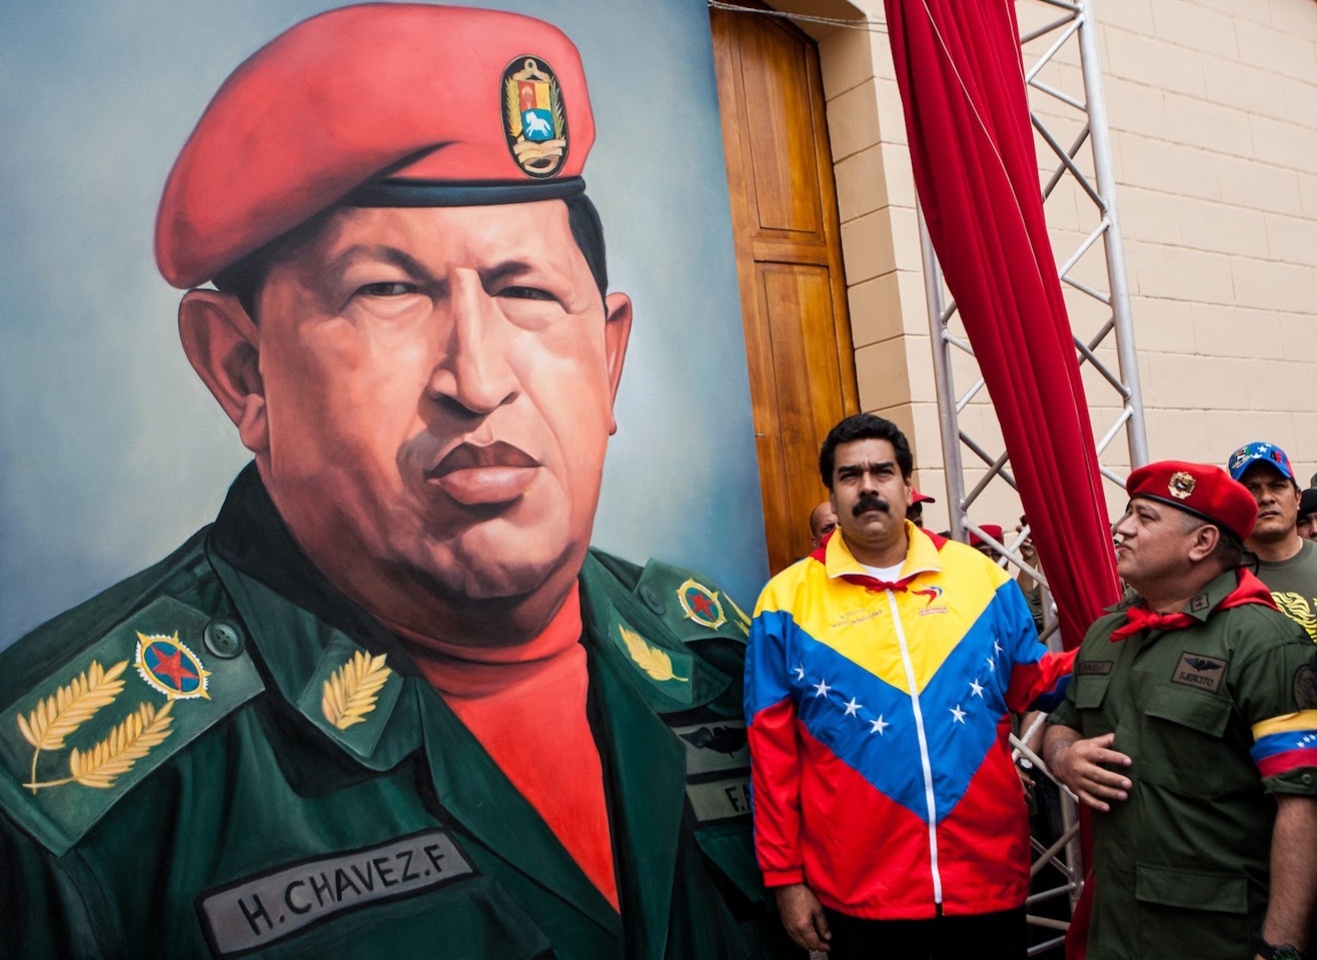 Кандидат від соціалістів Ніколас Мадуро, якого покійний лідер країни Уго Чавес обрав своїм наступником, у 2013 році з мінімальним відривом переміг на президентських виборах... Мадуро, отримав 50,7% голосів. За кандидата від опозиції Енріке Капрілеса було віддано 49,1% голосів.